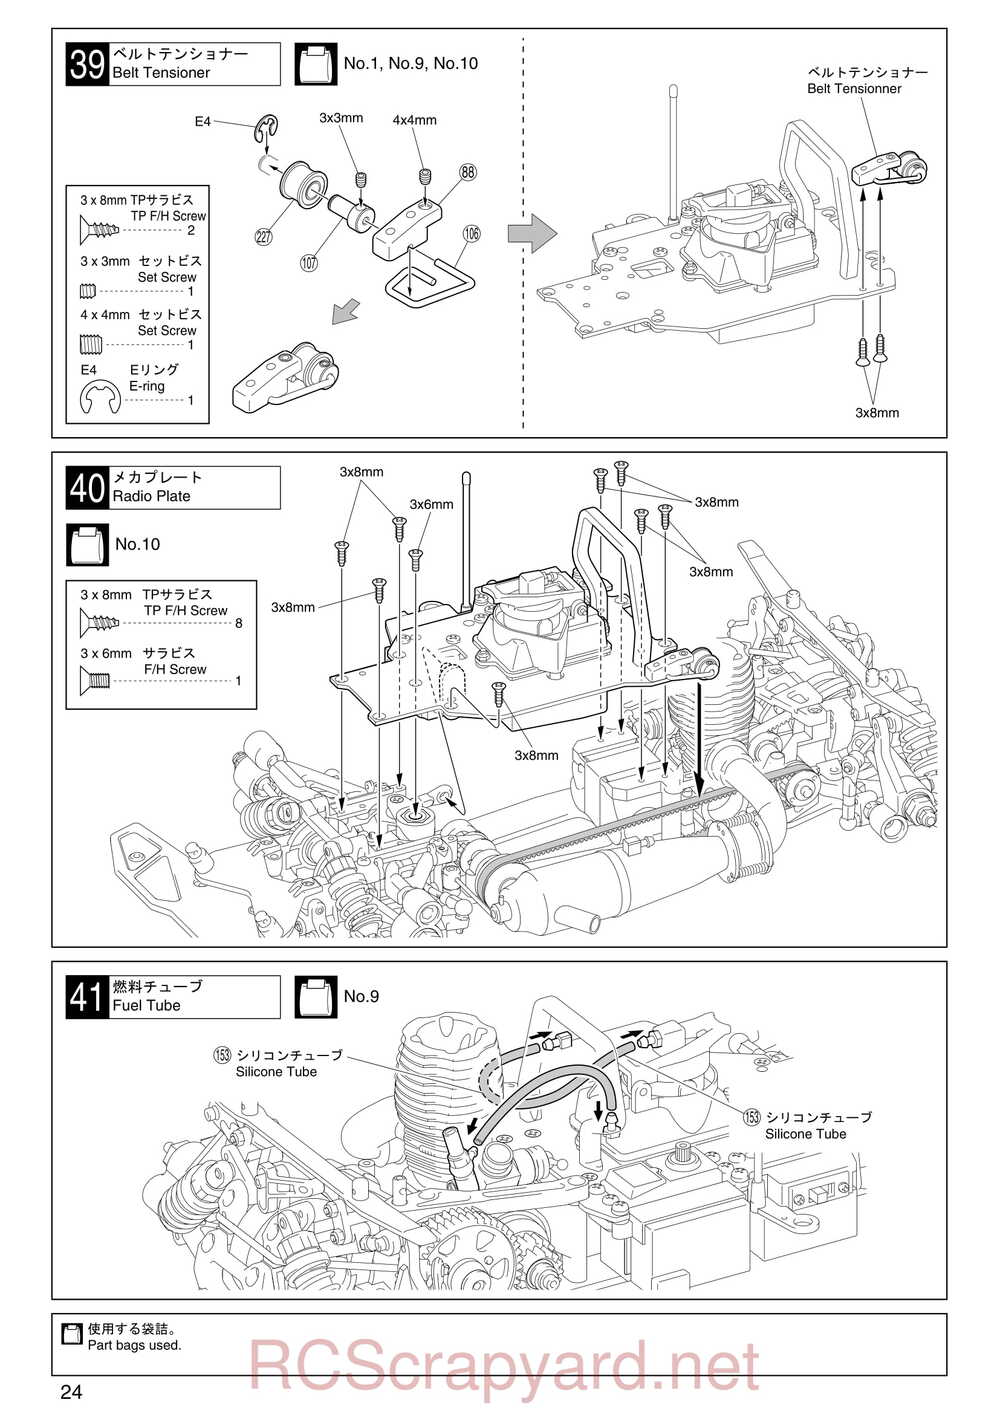 Kyosho - 31255 - V-One RR Evolution - Manual - Page 24